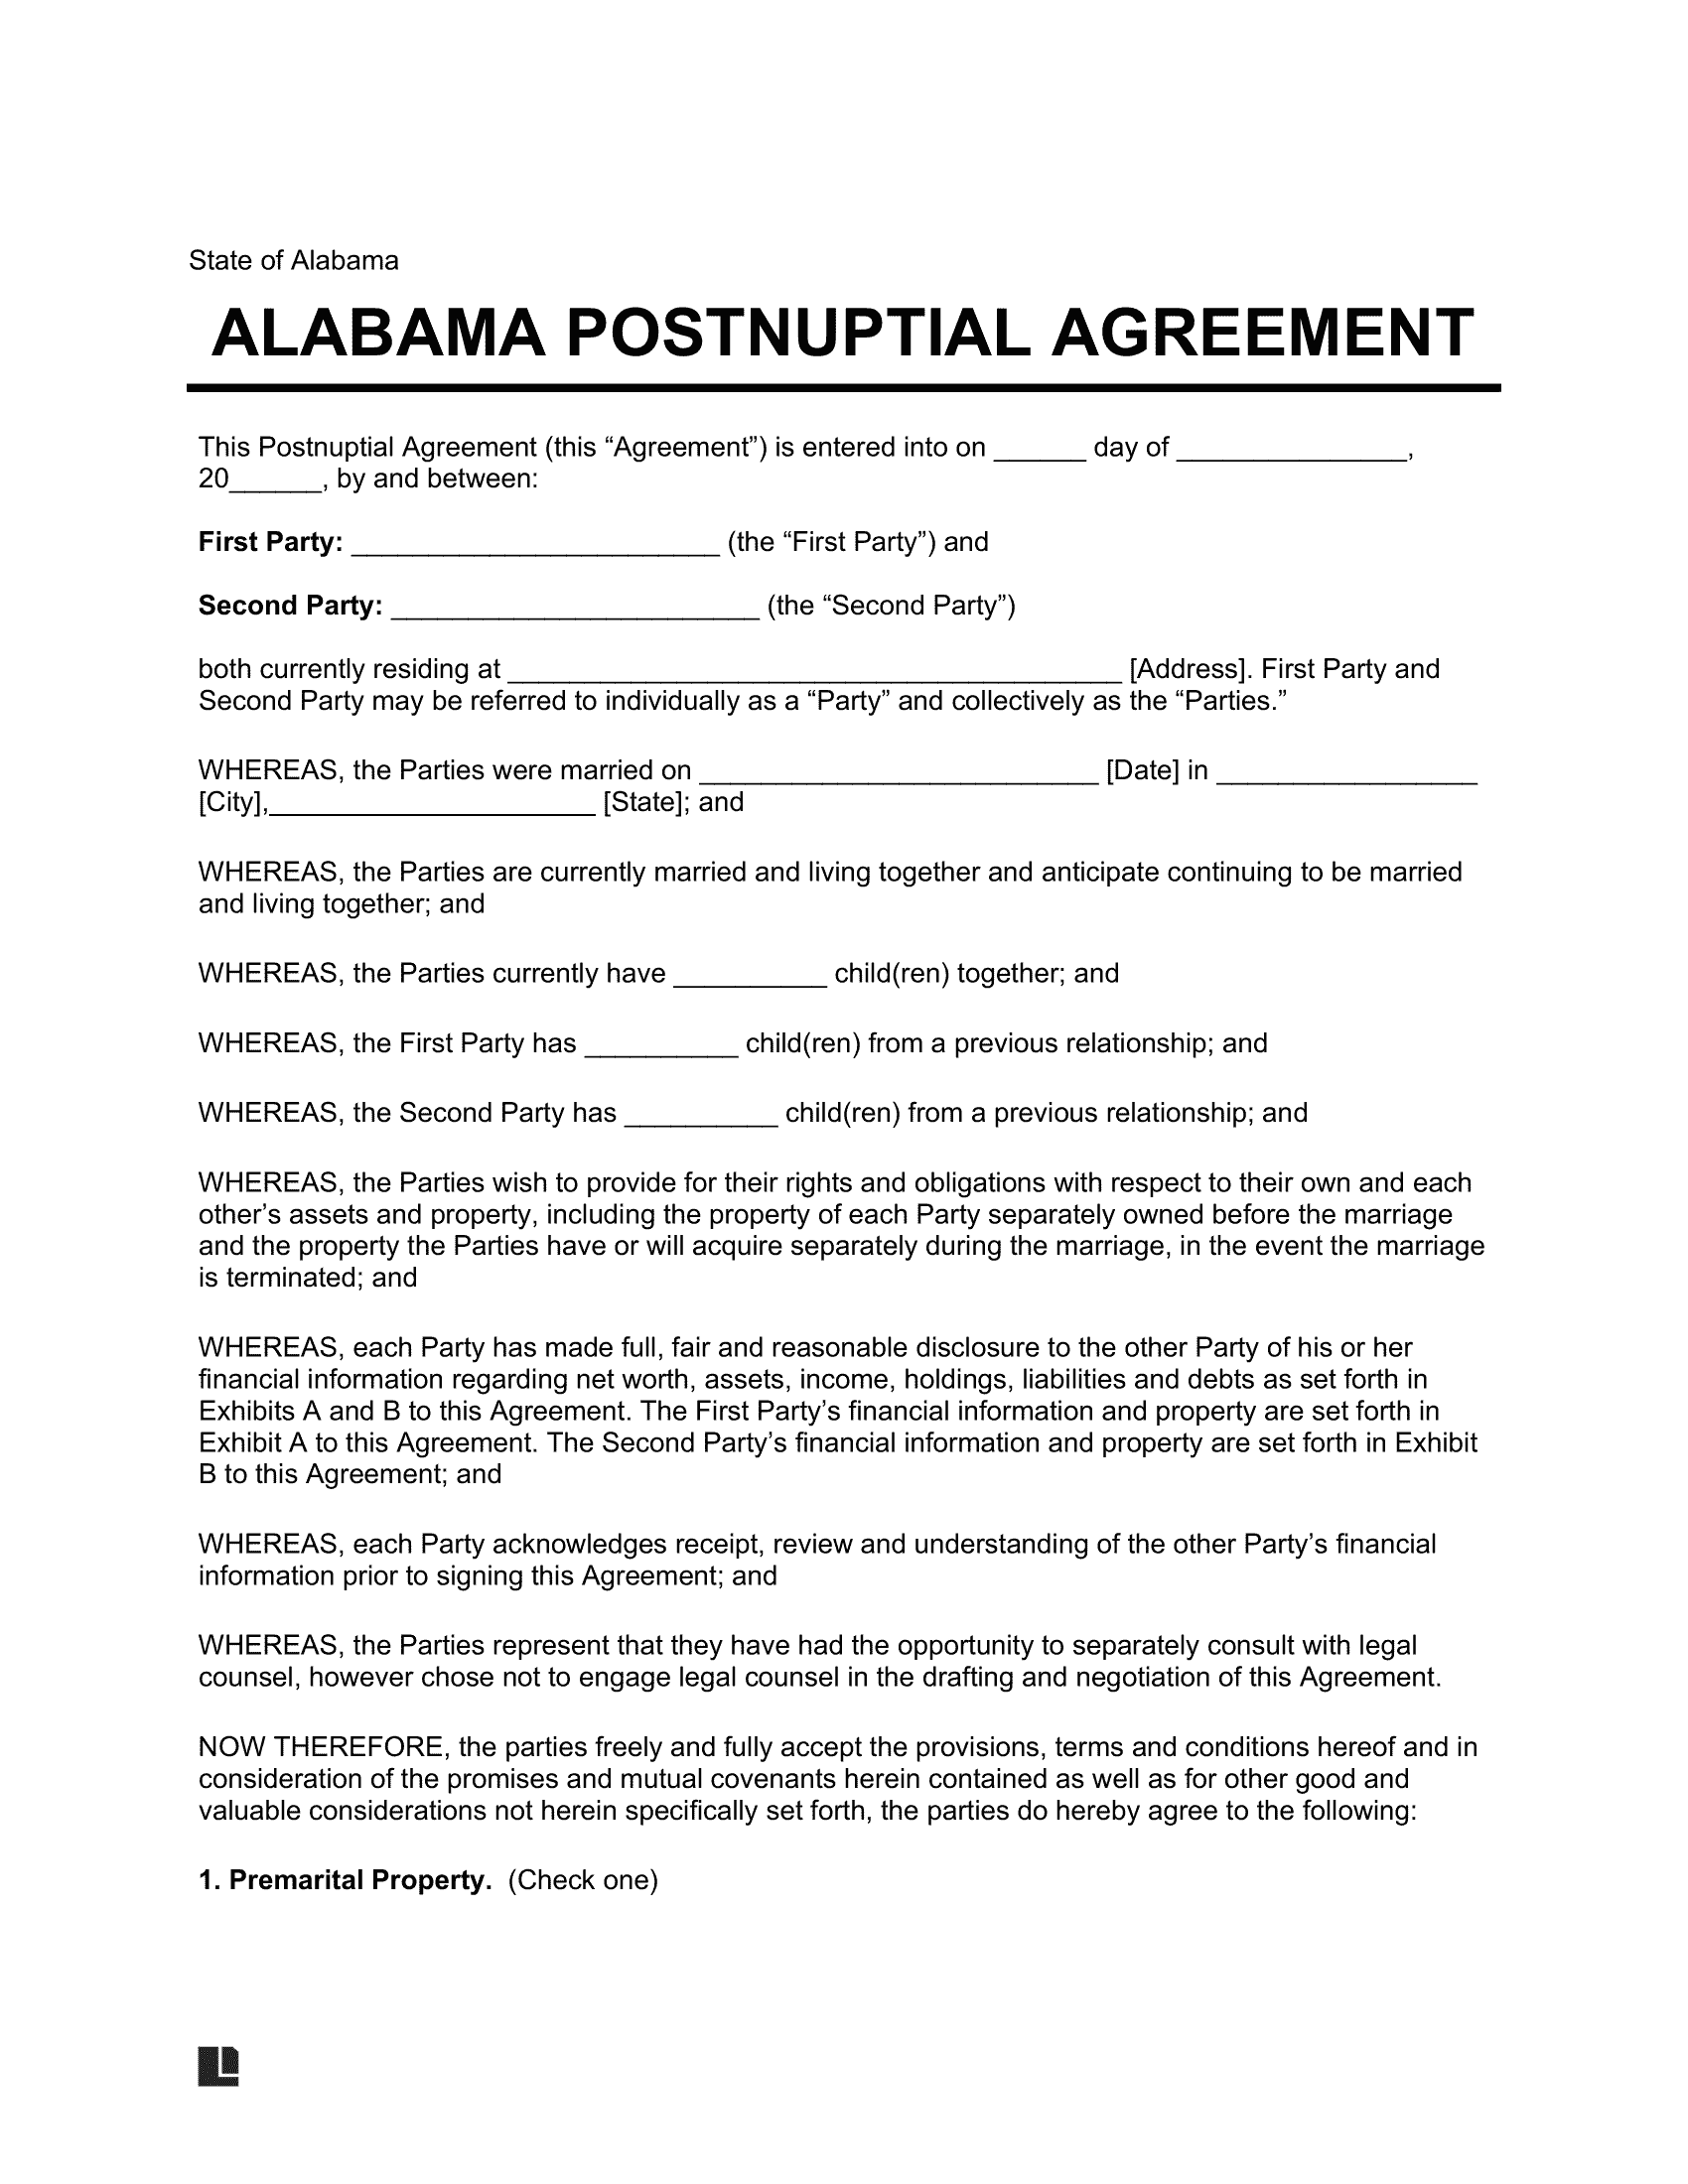 Alabama Postnuptial Agreement Template